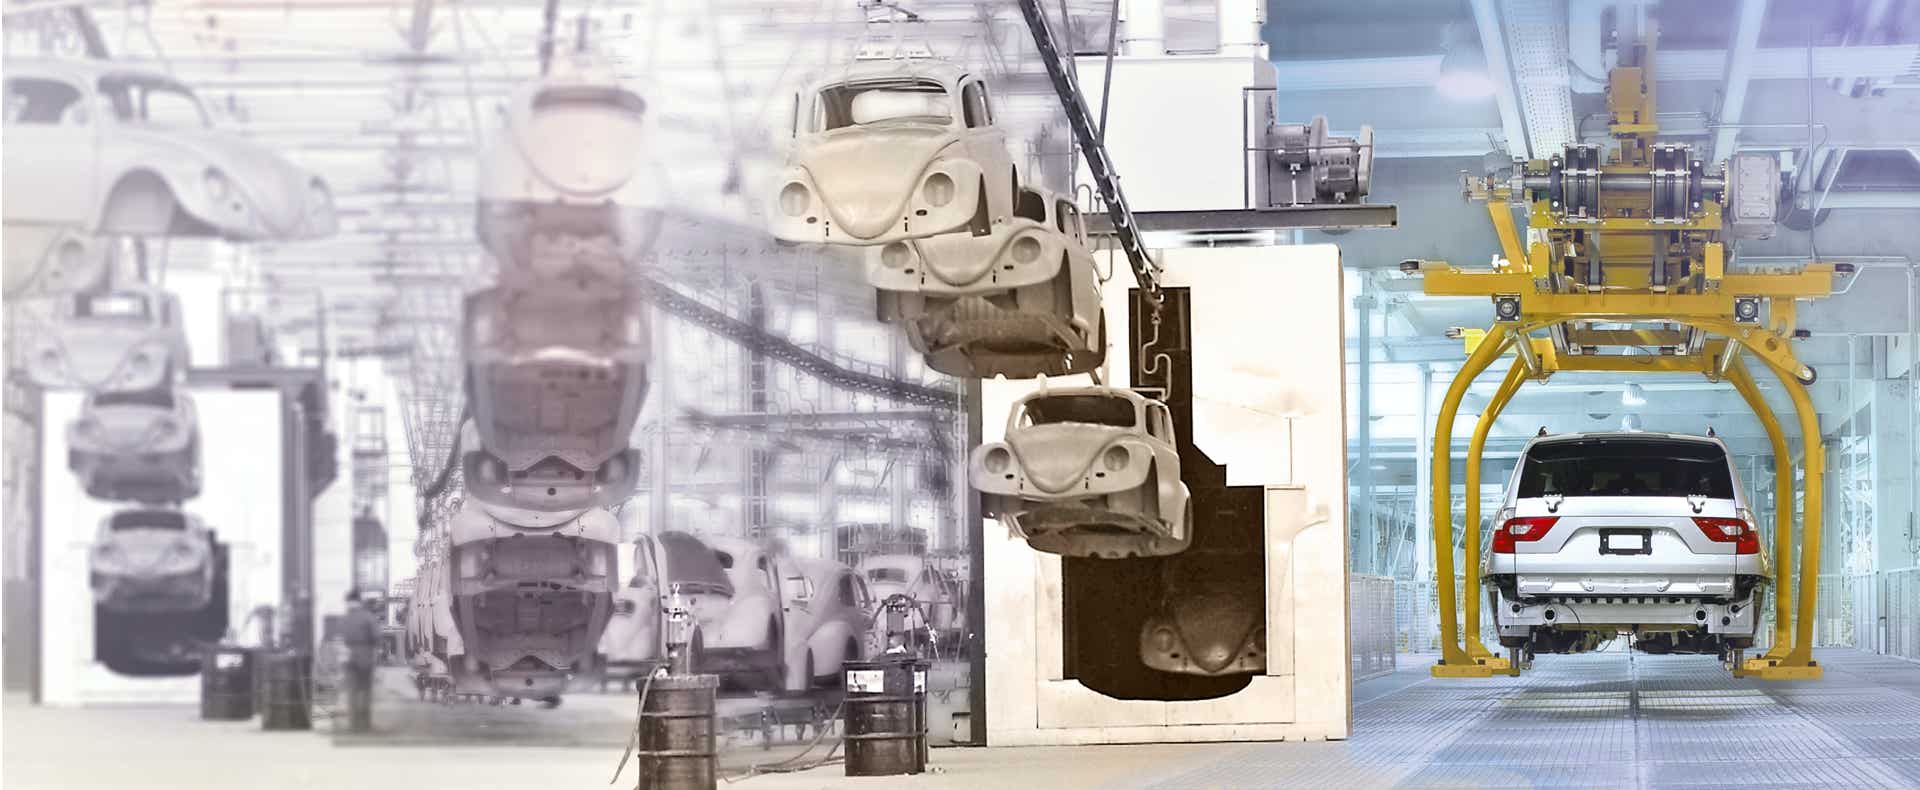 Produktion des VW-Käfers und eines modernen Autos verschmolzen in einer Collage